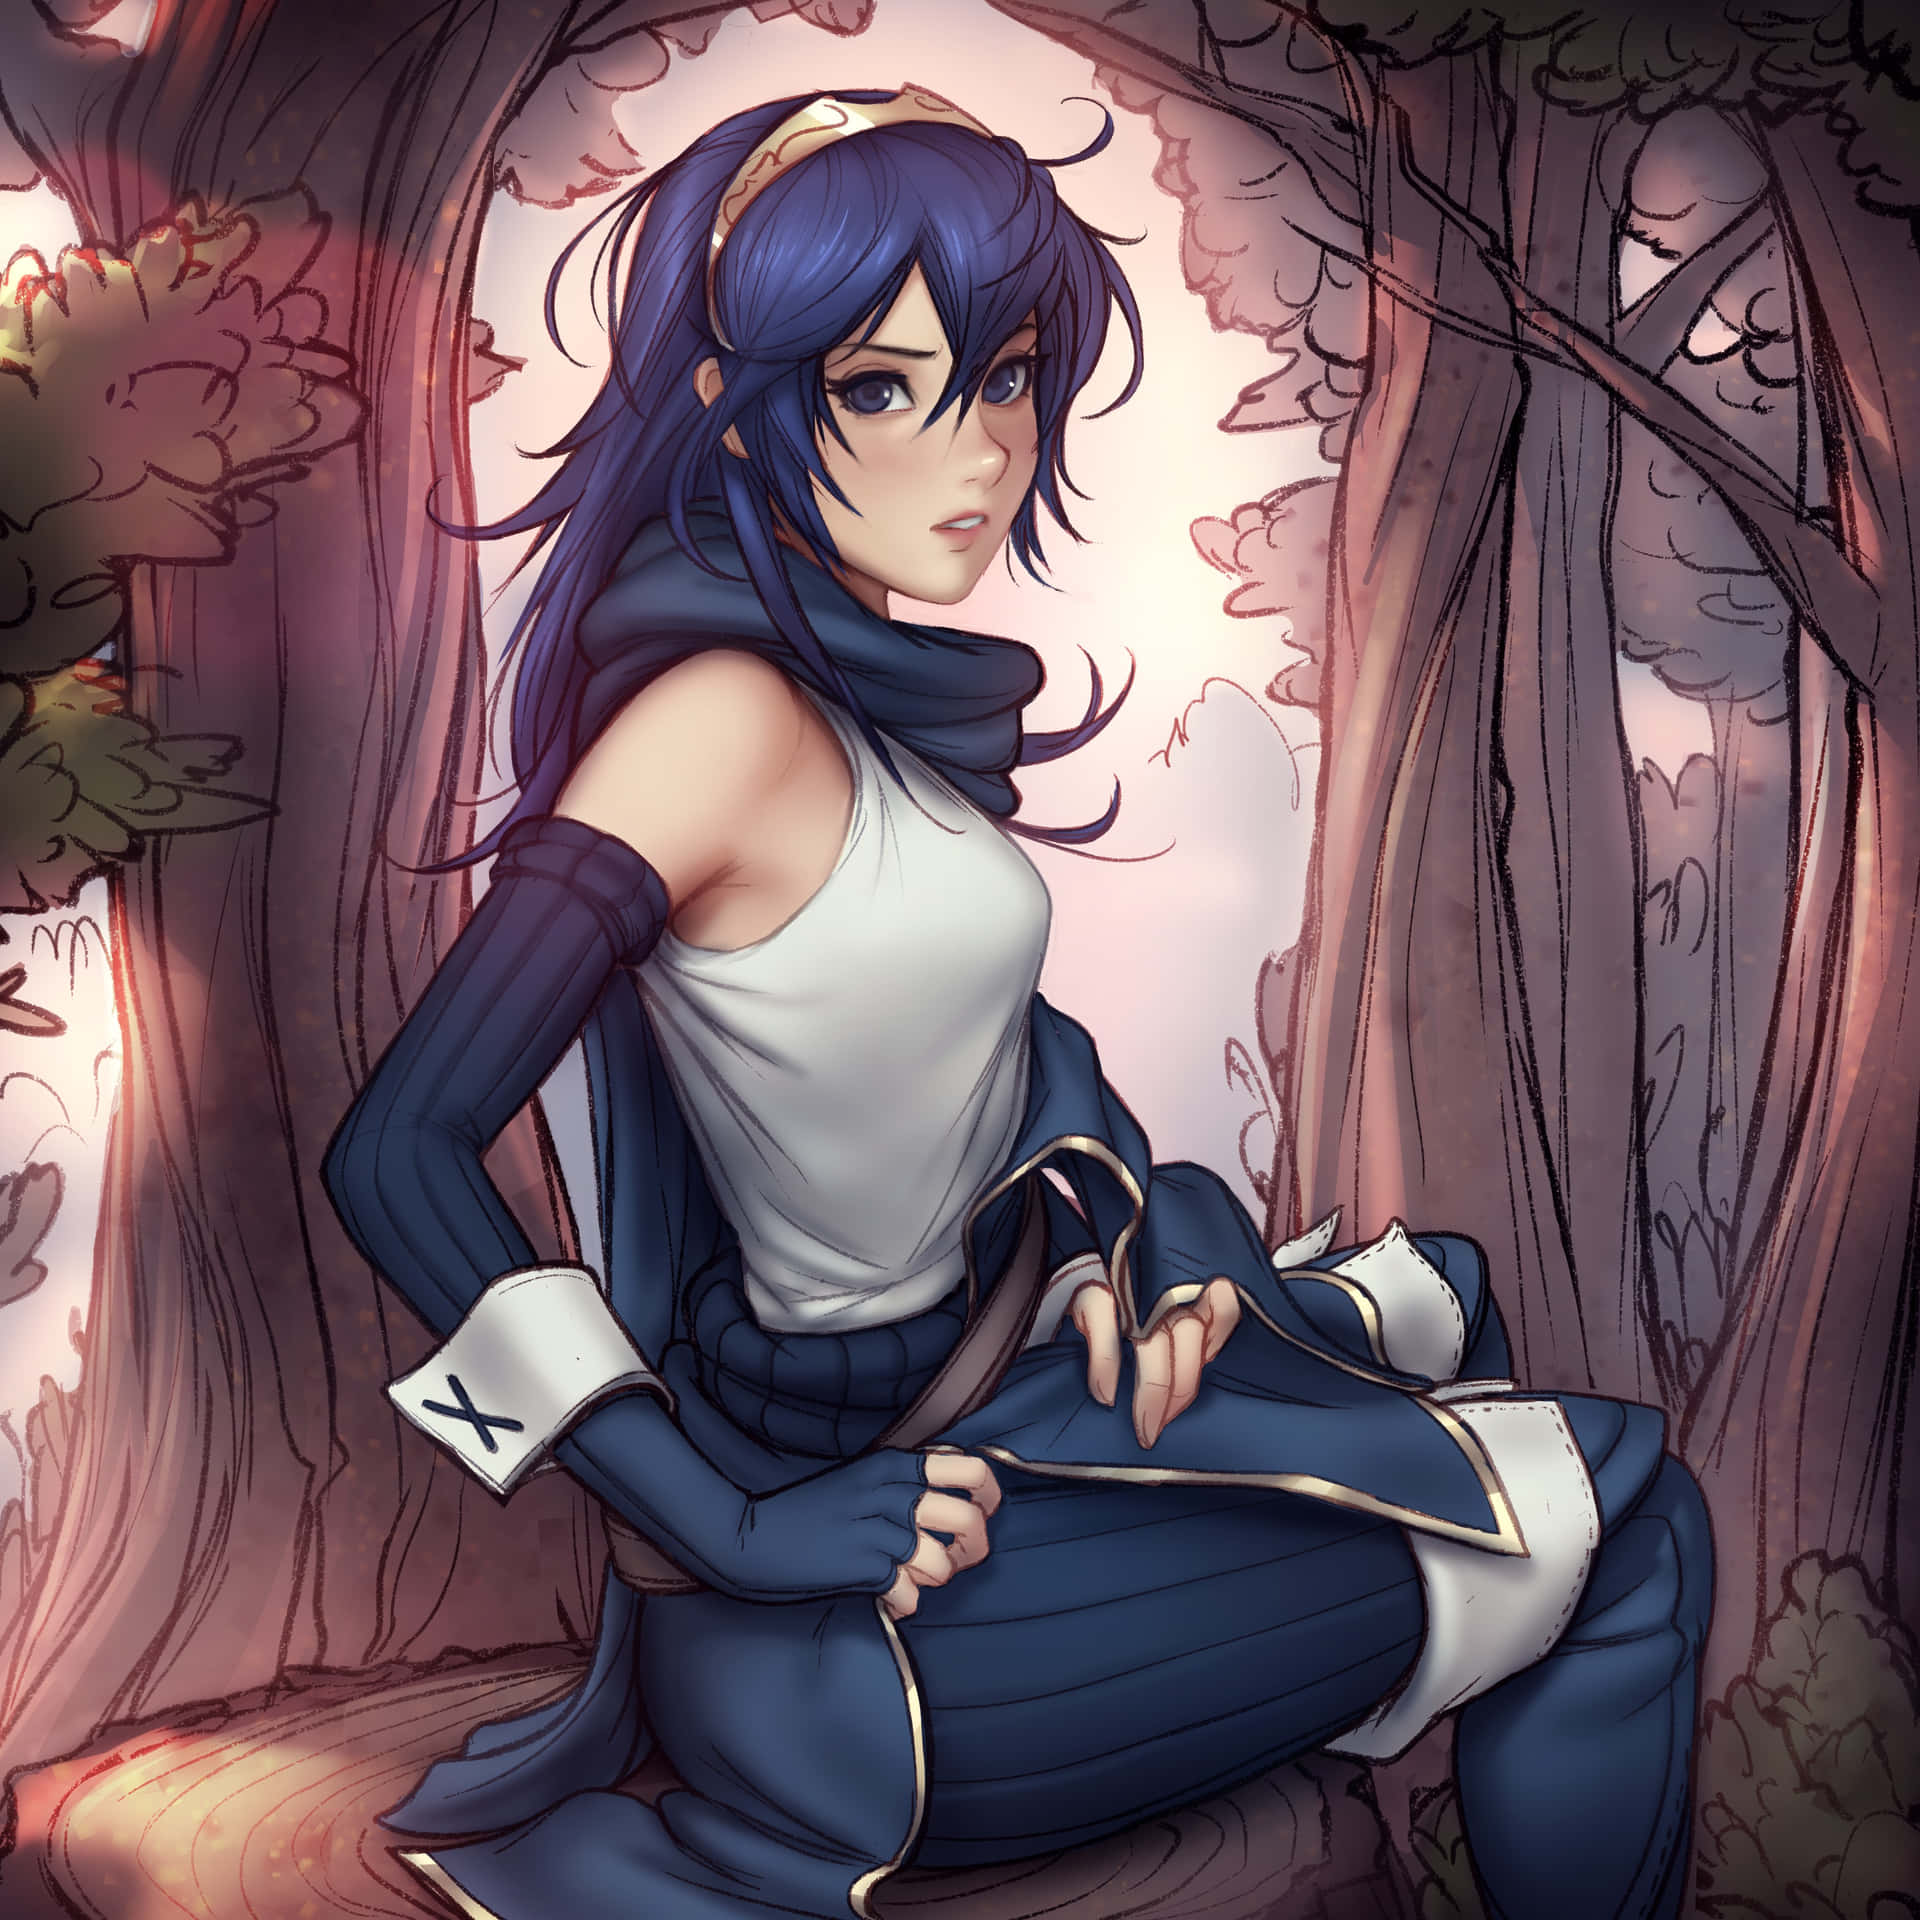 Einmädchen Sitzt Im Wald Mit Blauen Haaren. Wallpaper